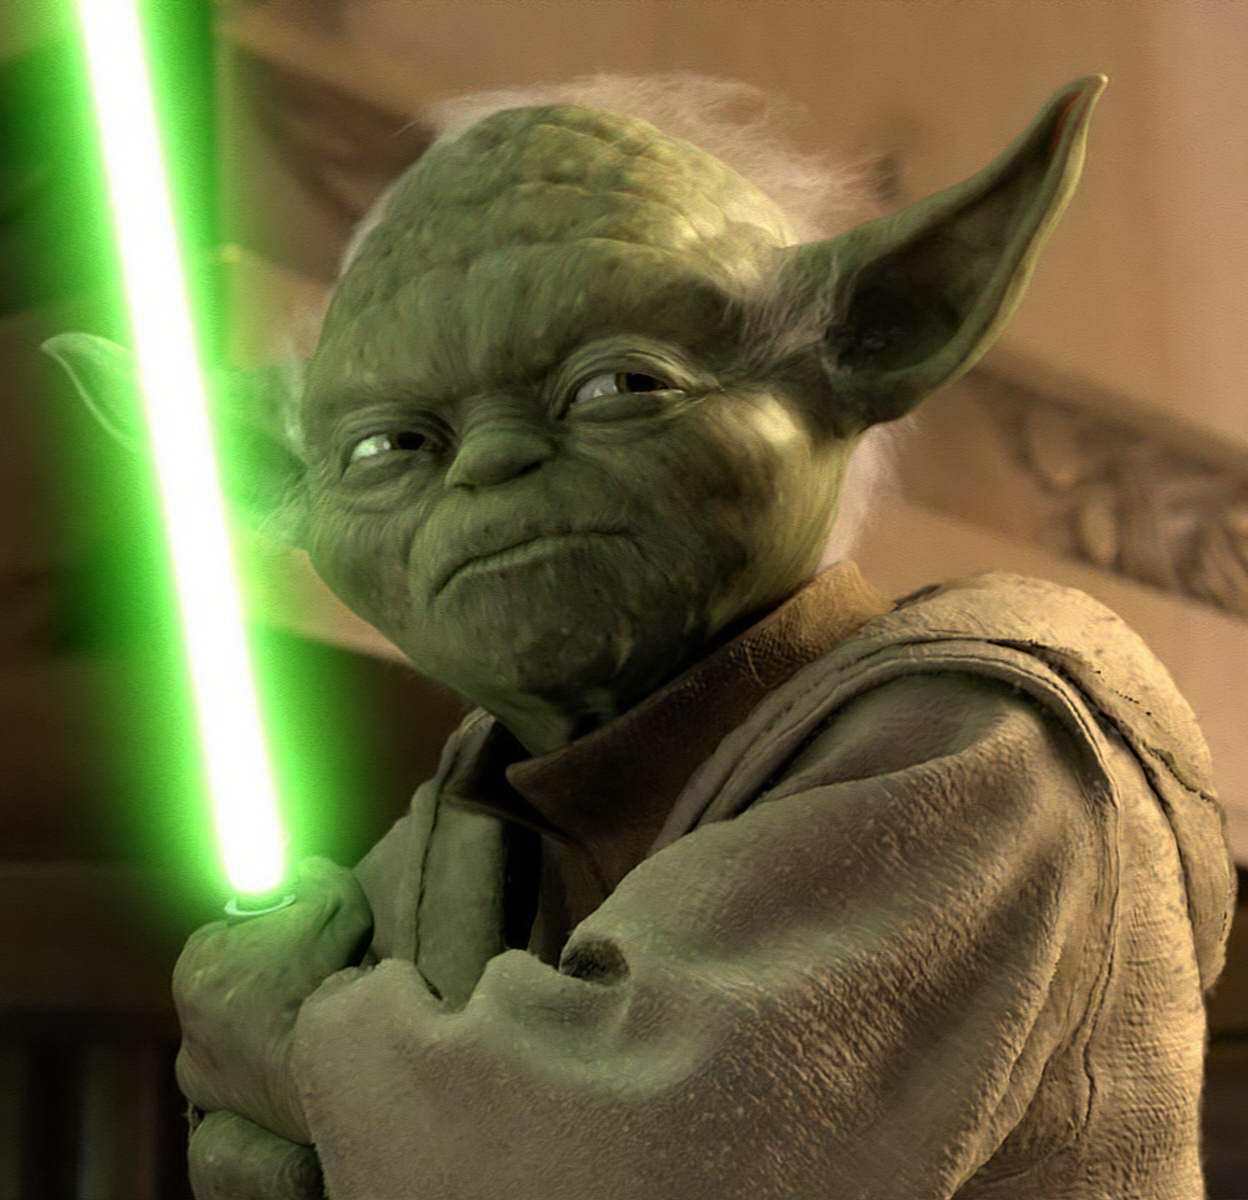 Star Wars épisode VIII : Maitre Yoda de retour ?